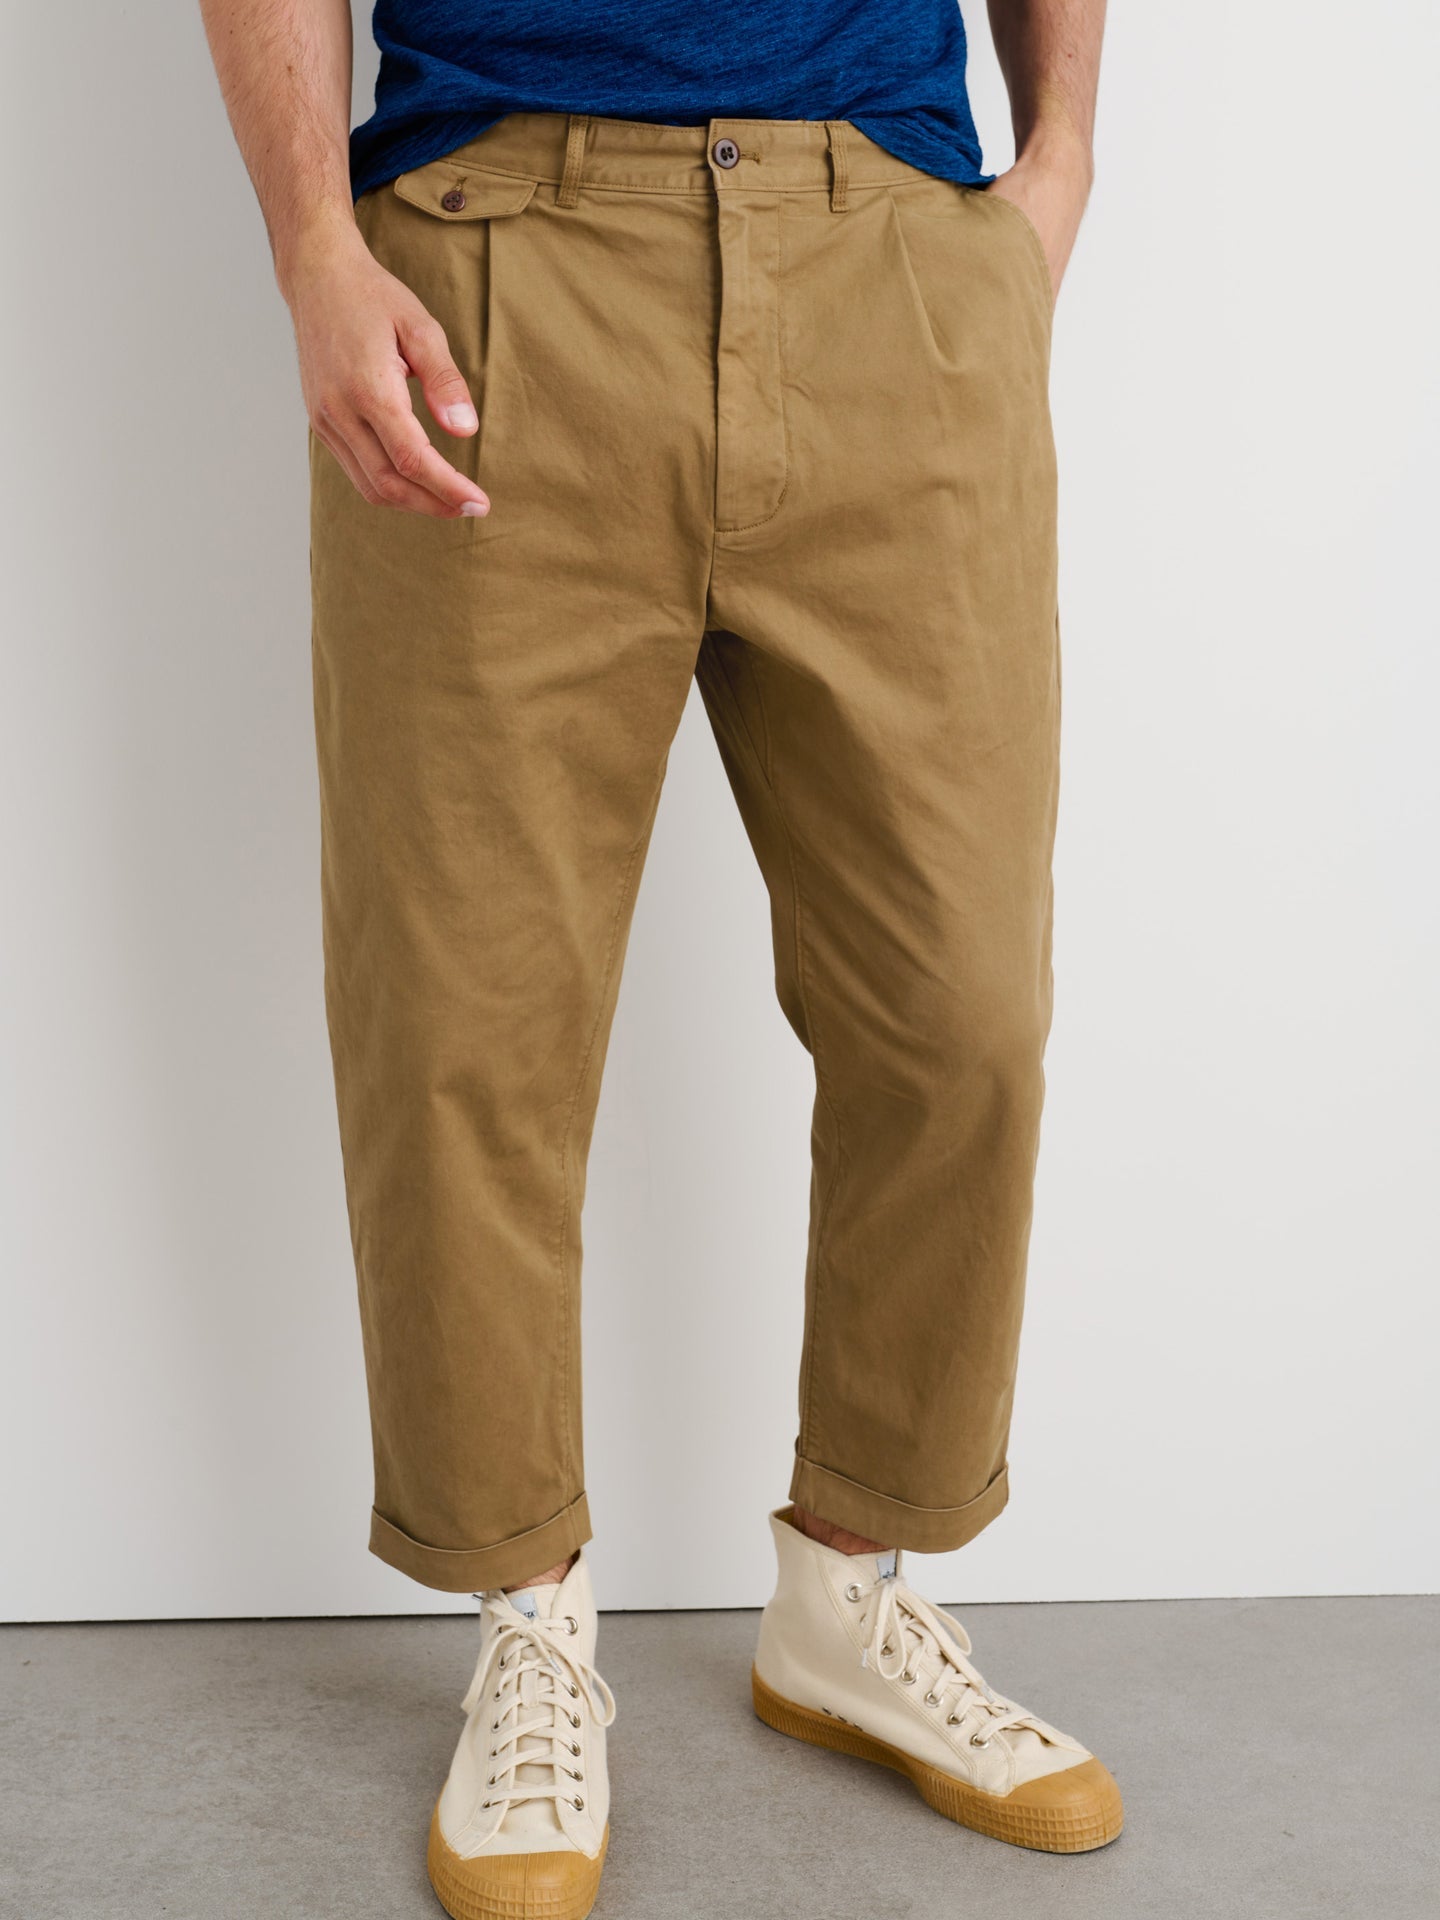 Standard Pleated Pant in Chino - Dark Khaki